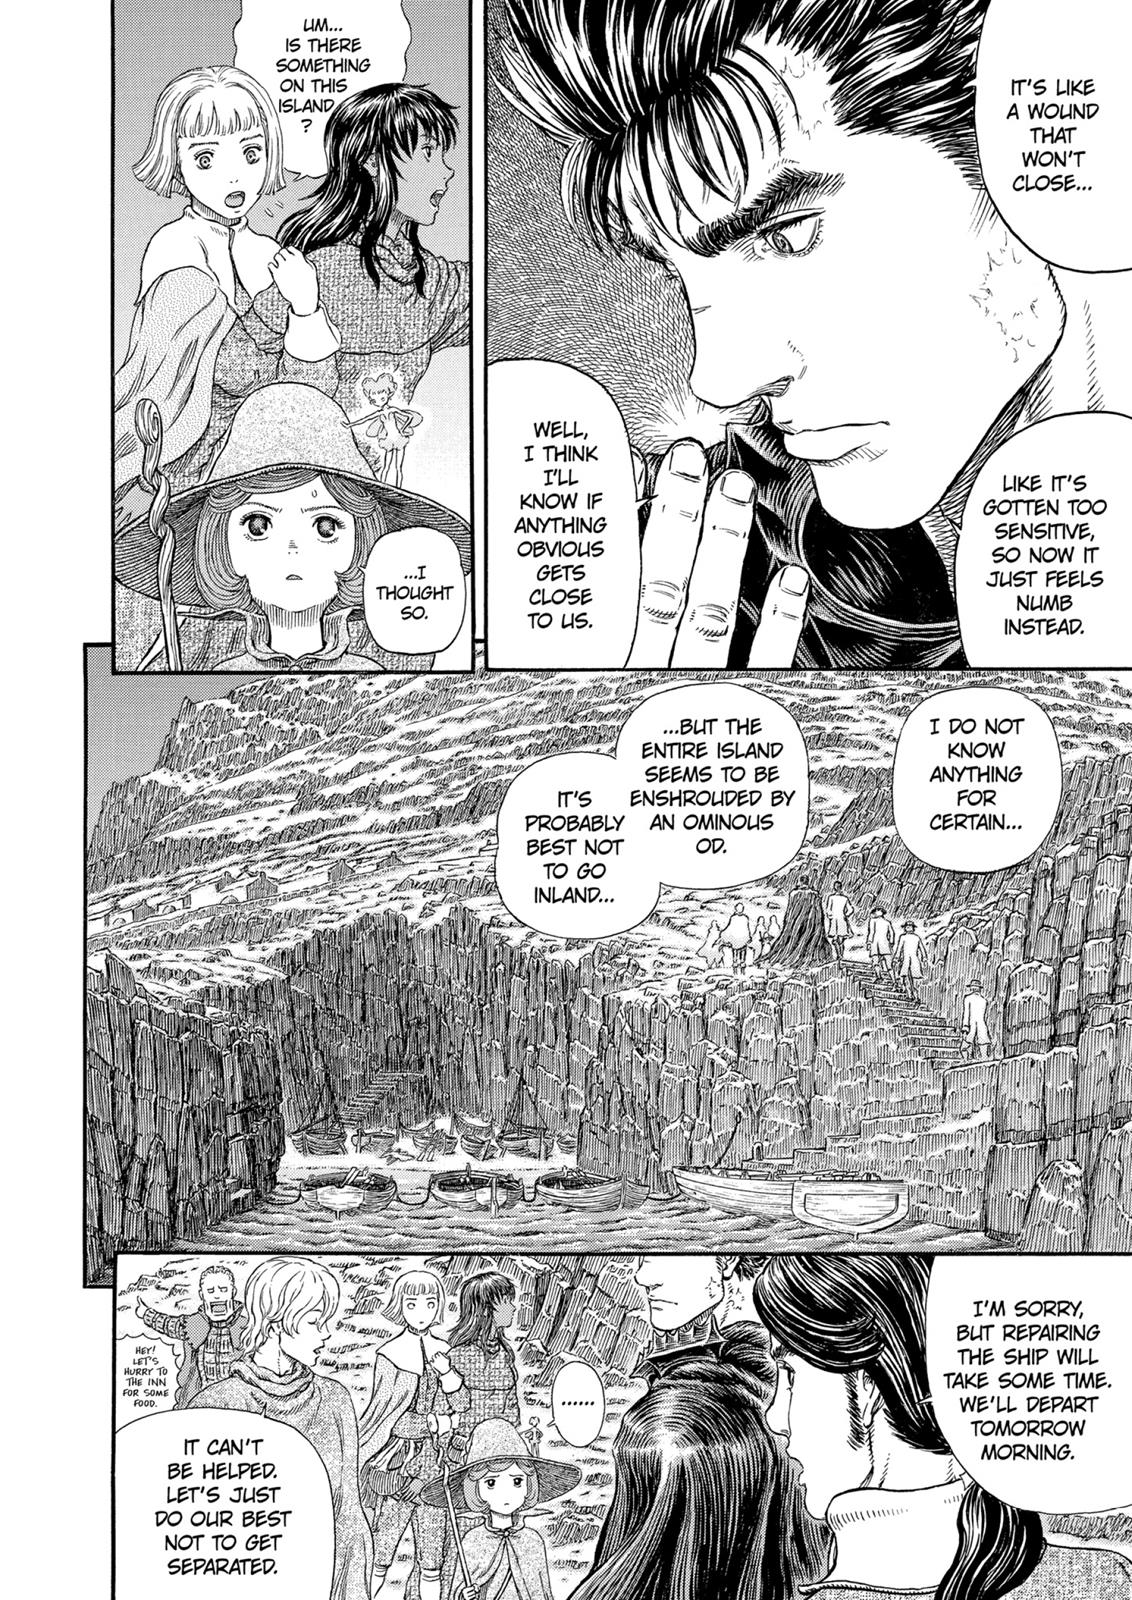 Berserk Manga Chapter 311 image 11